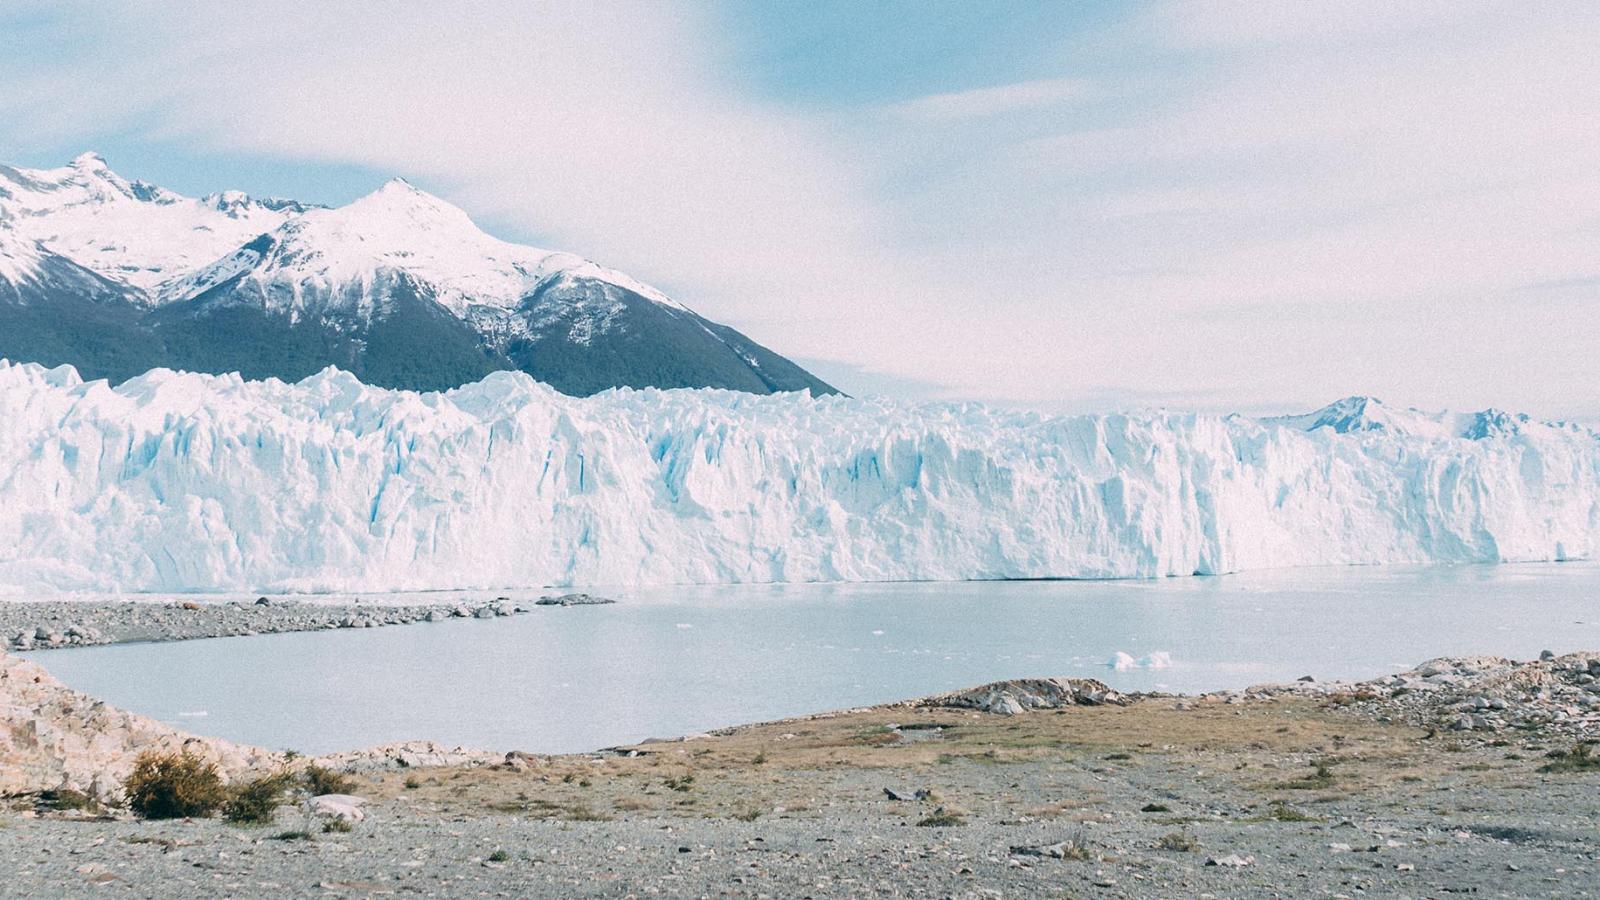 Trekking on Argentina's Perito Moreno Glacier